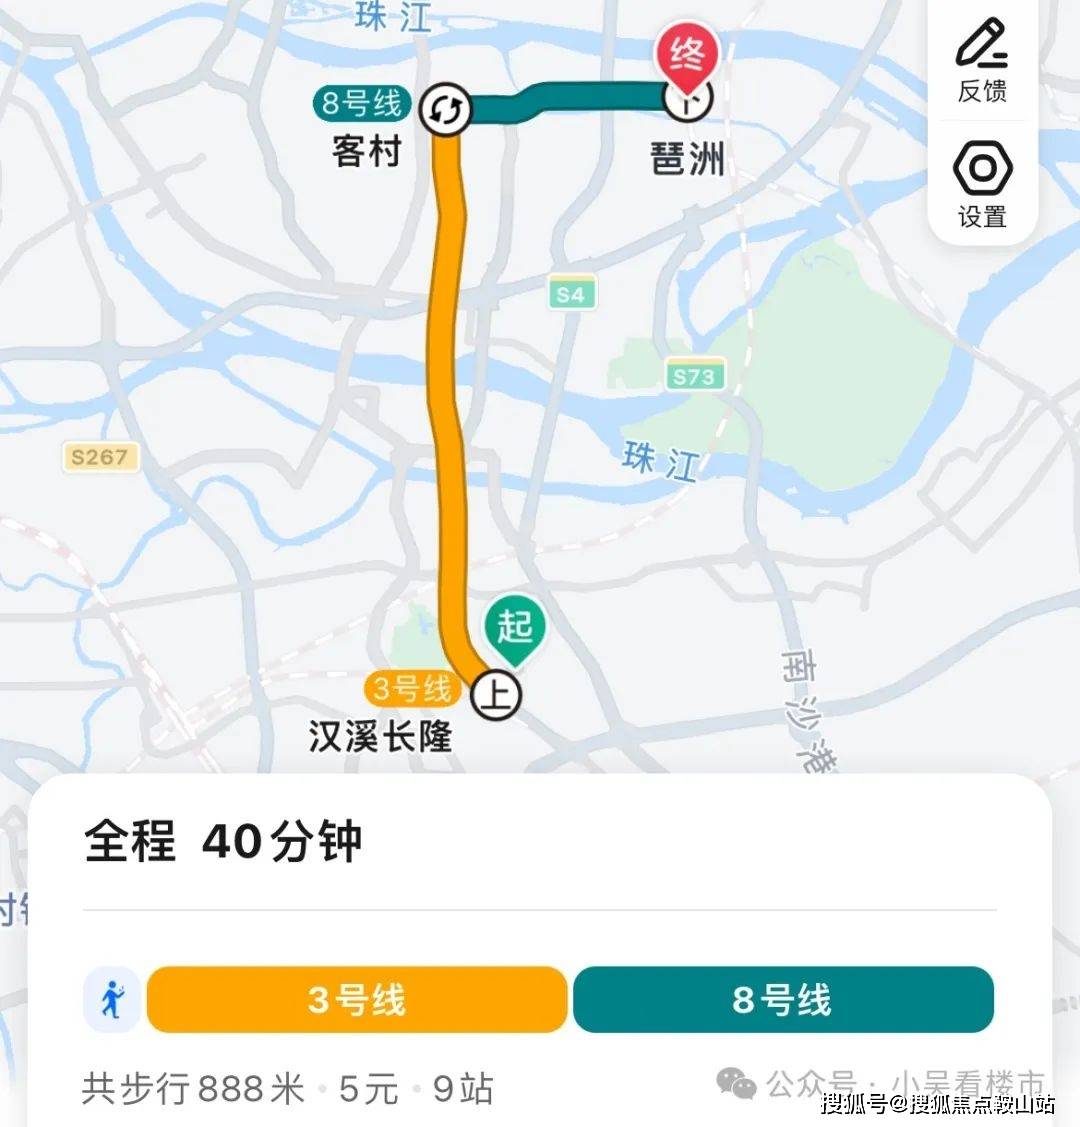 地铁去往琶洲:步行至地铁站,乘坐3号线到客村换乘8号线,再到琶洲,全程